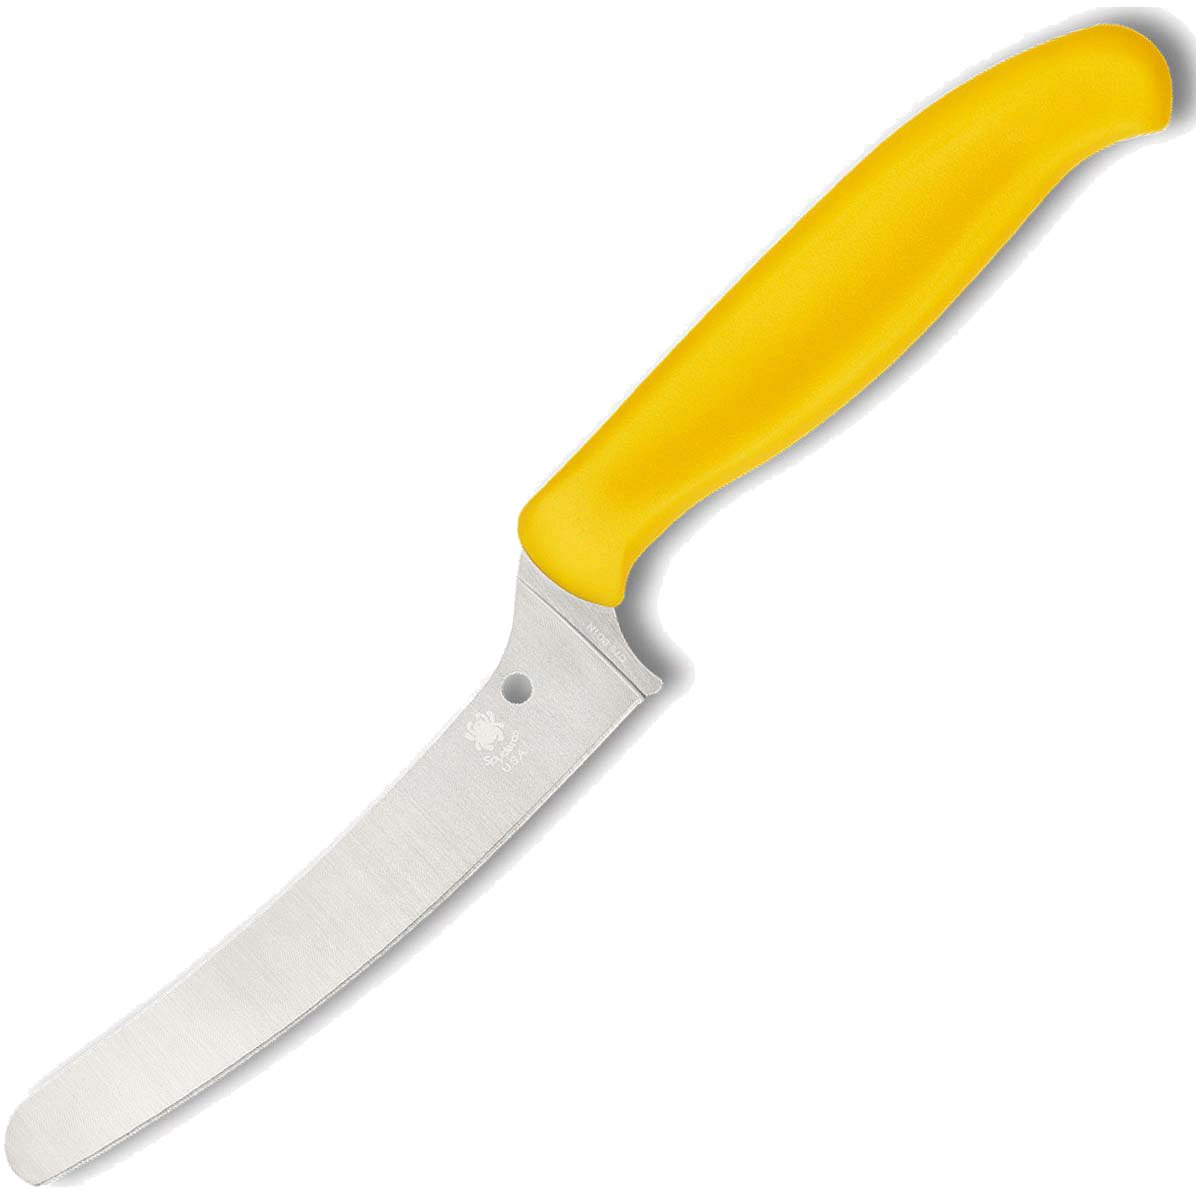 Универсальный кухонный нож Spyderco Z-Cut Offset Kitchen, сталь CTS™ - BD1 Alloy, рукоять желтый полипропилен - фото 1